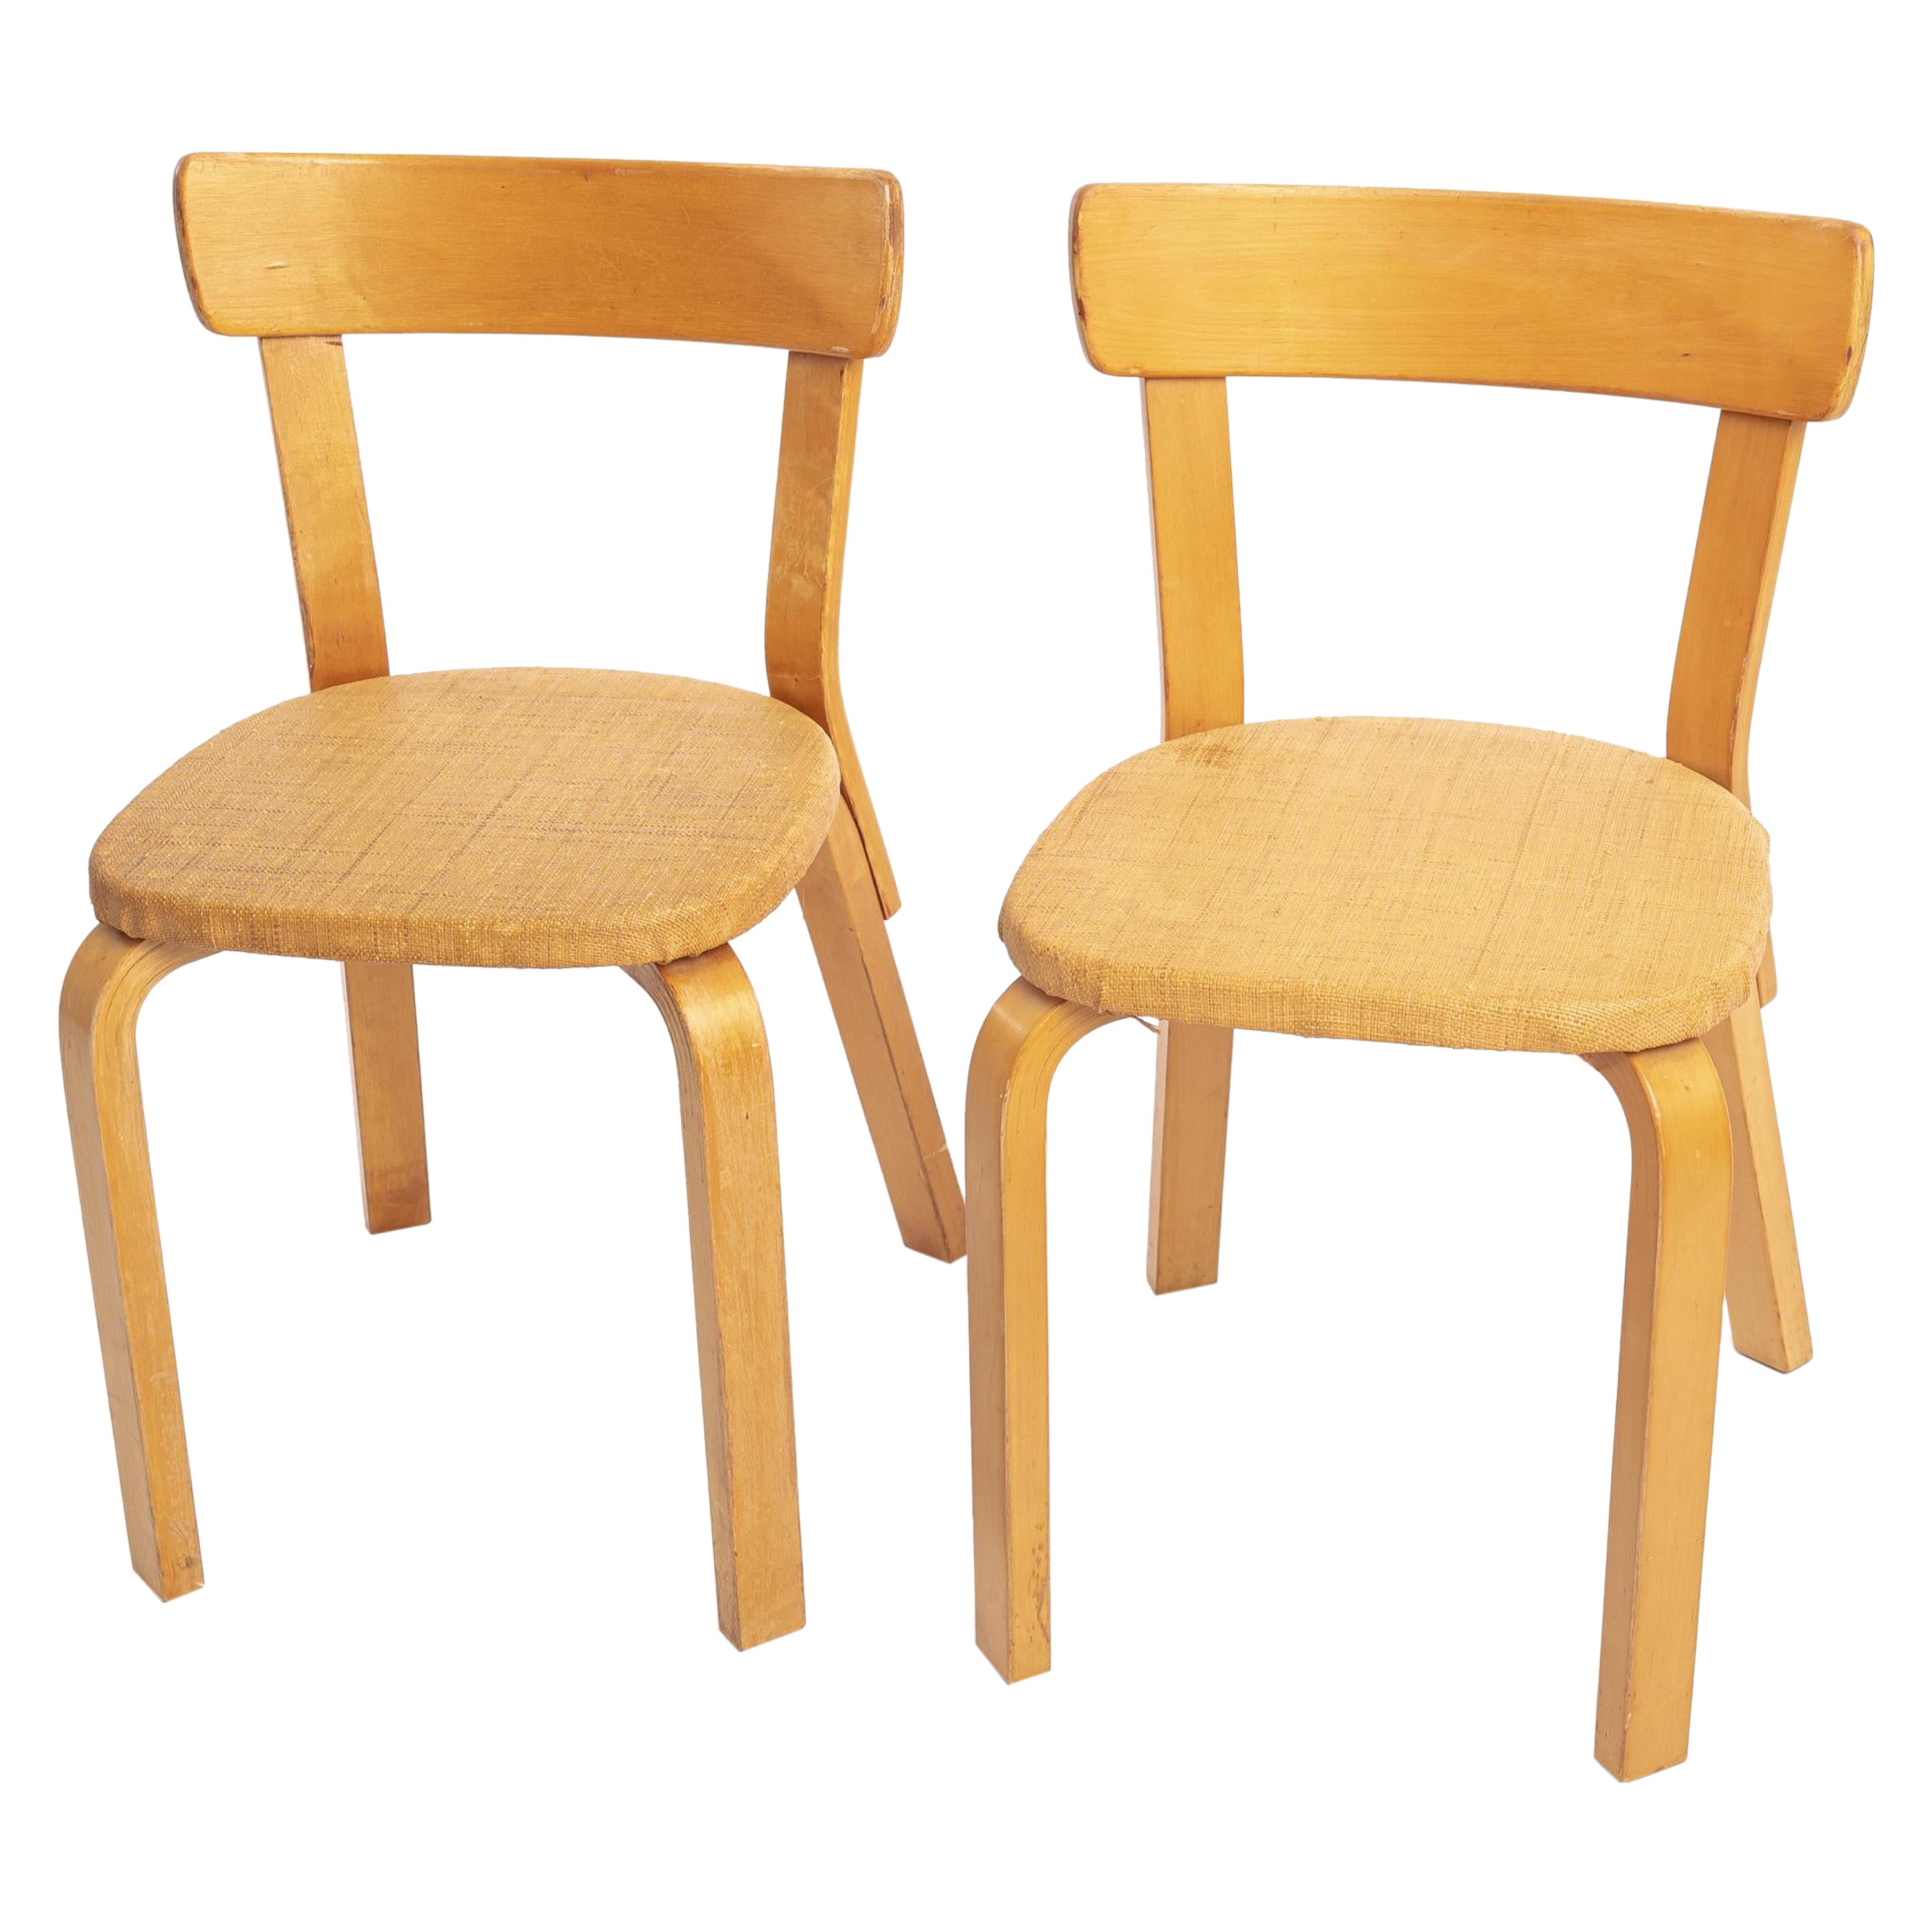 Alvar Aalto-Stühle Modell 69, 2 Stühle